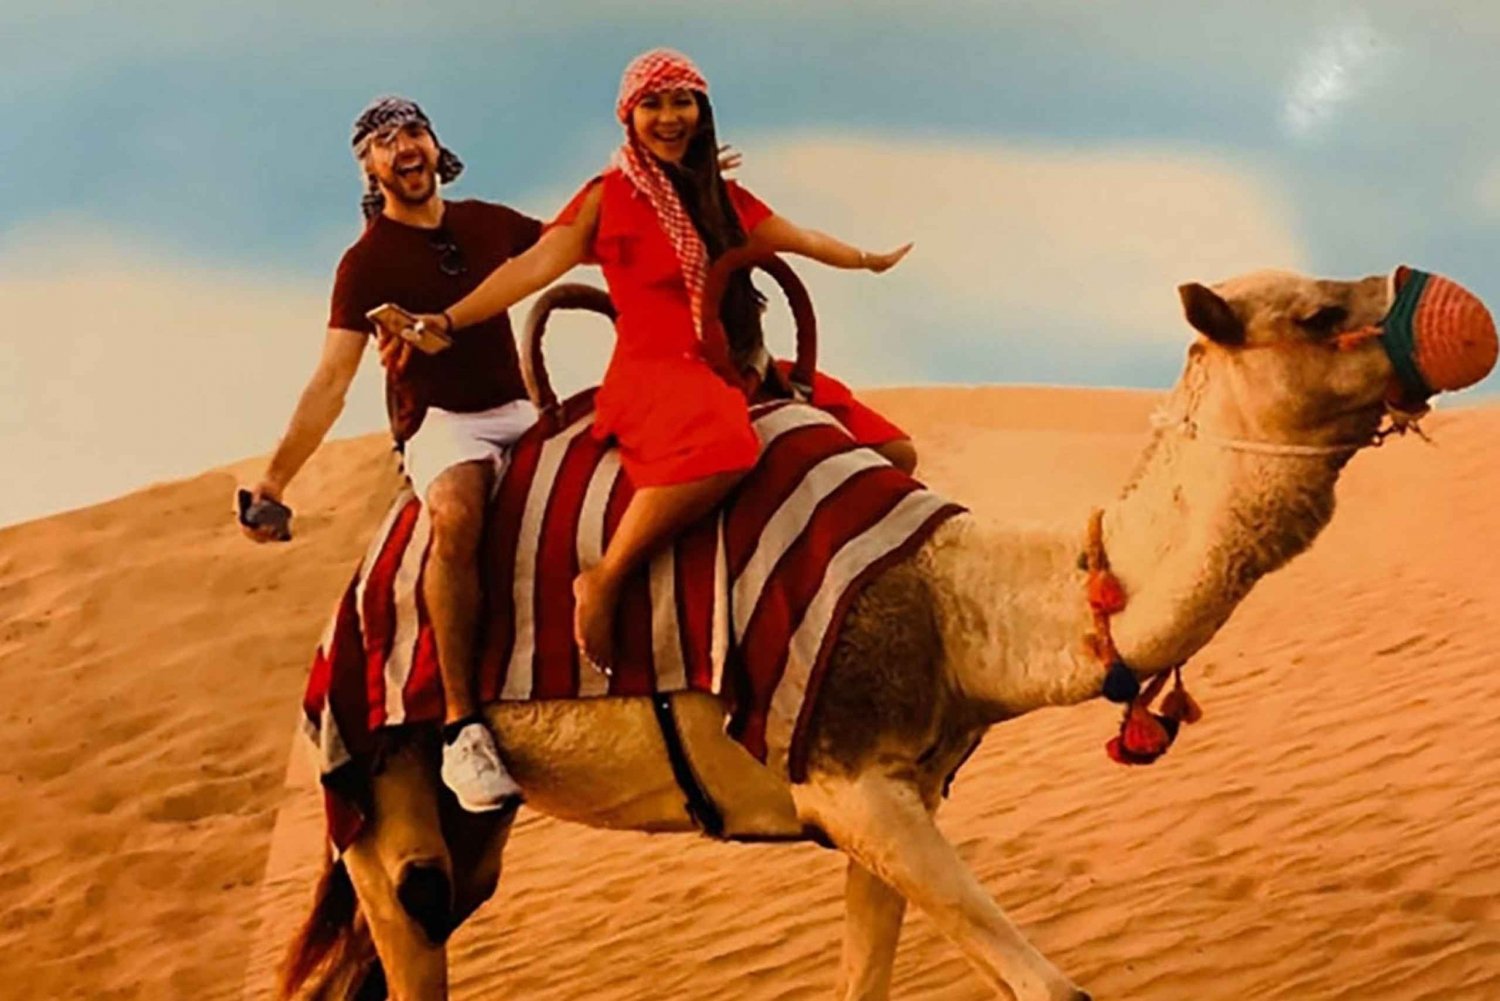 Røde sanddyner, firhjuling, kameltrekking og autentisk grillmat